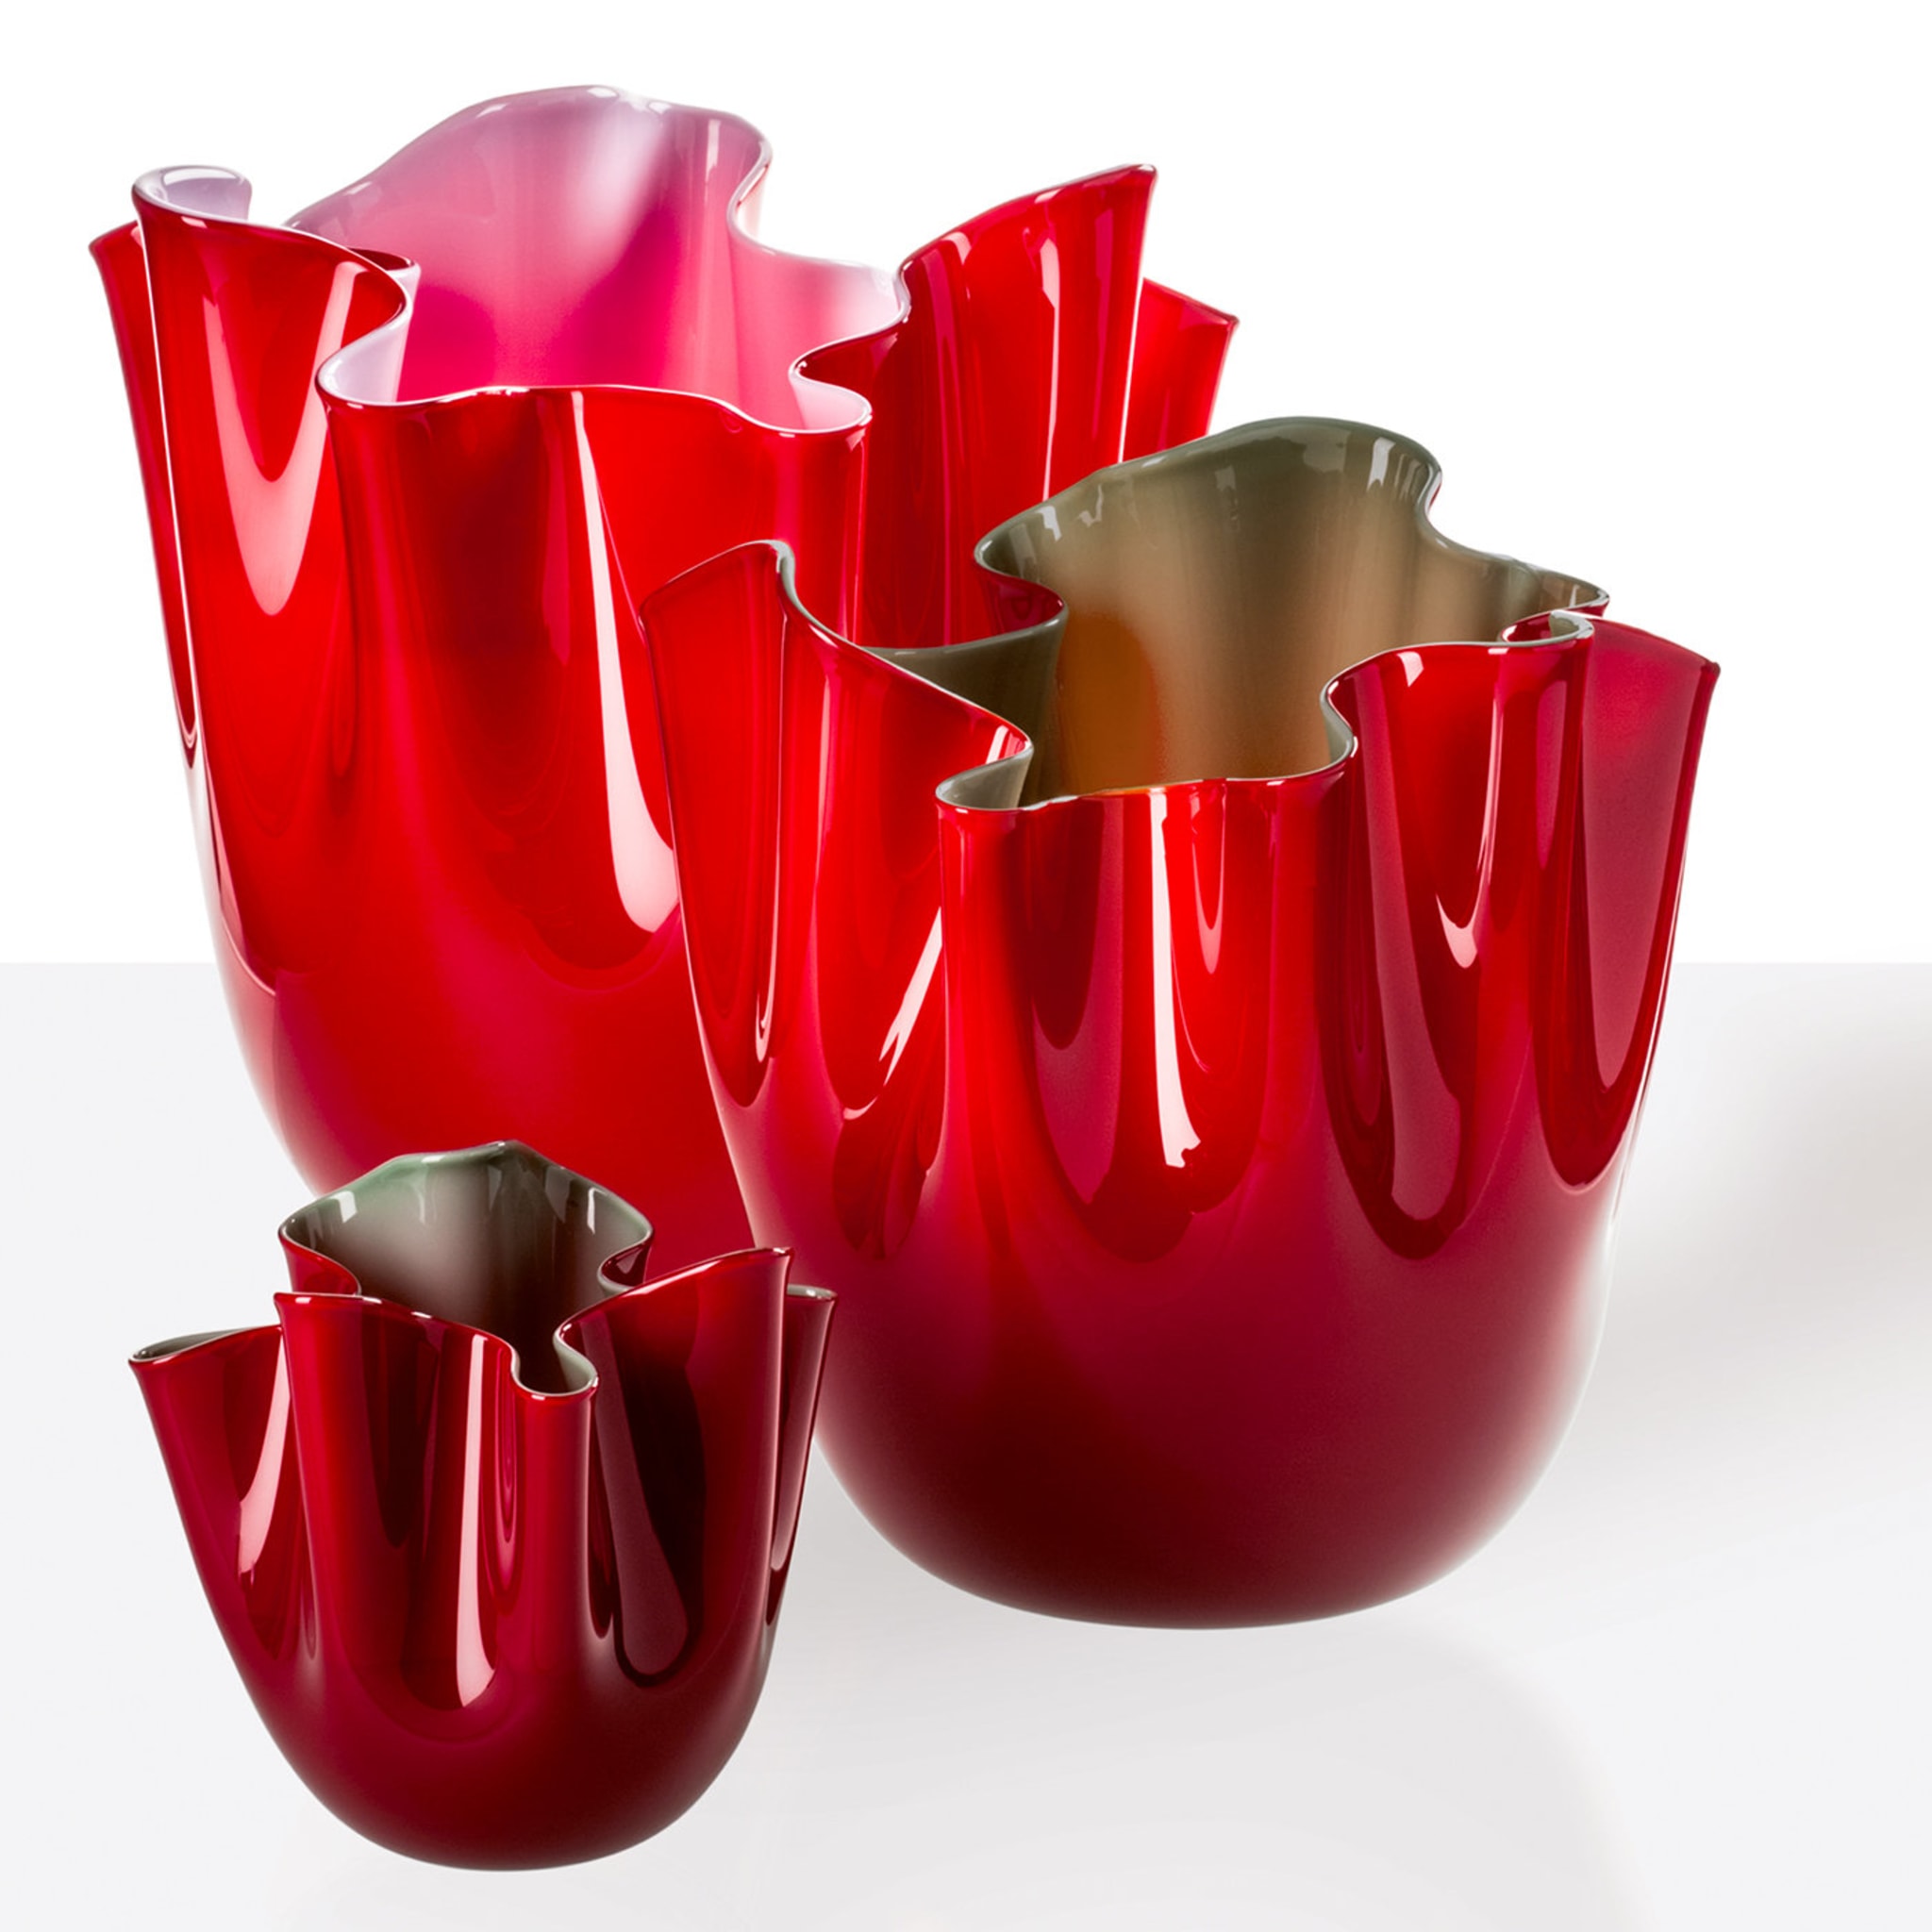 Fazzoletto Opalini Red Vase by Fulvio Bianconi # 1 - Alternative view 1